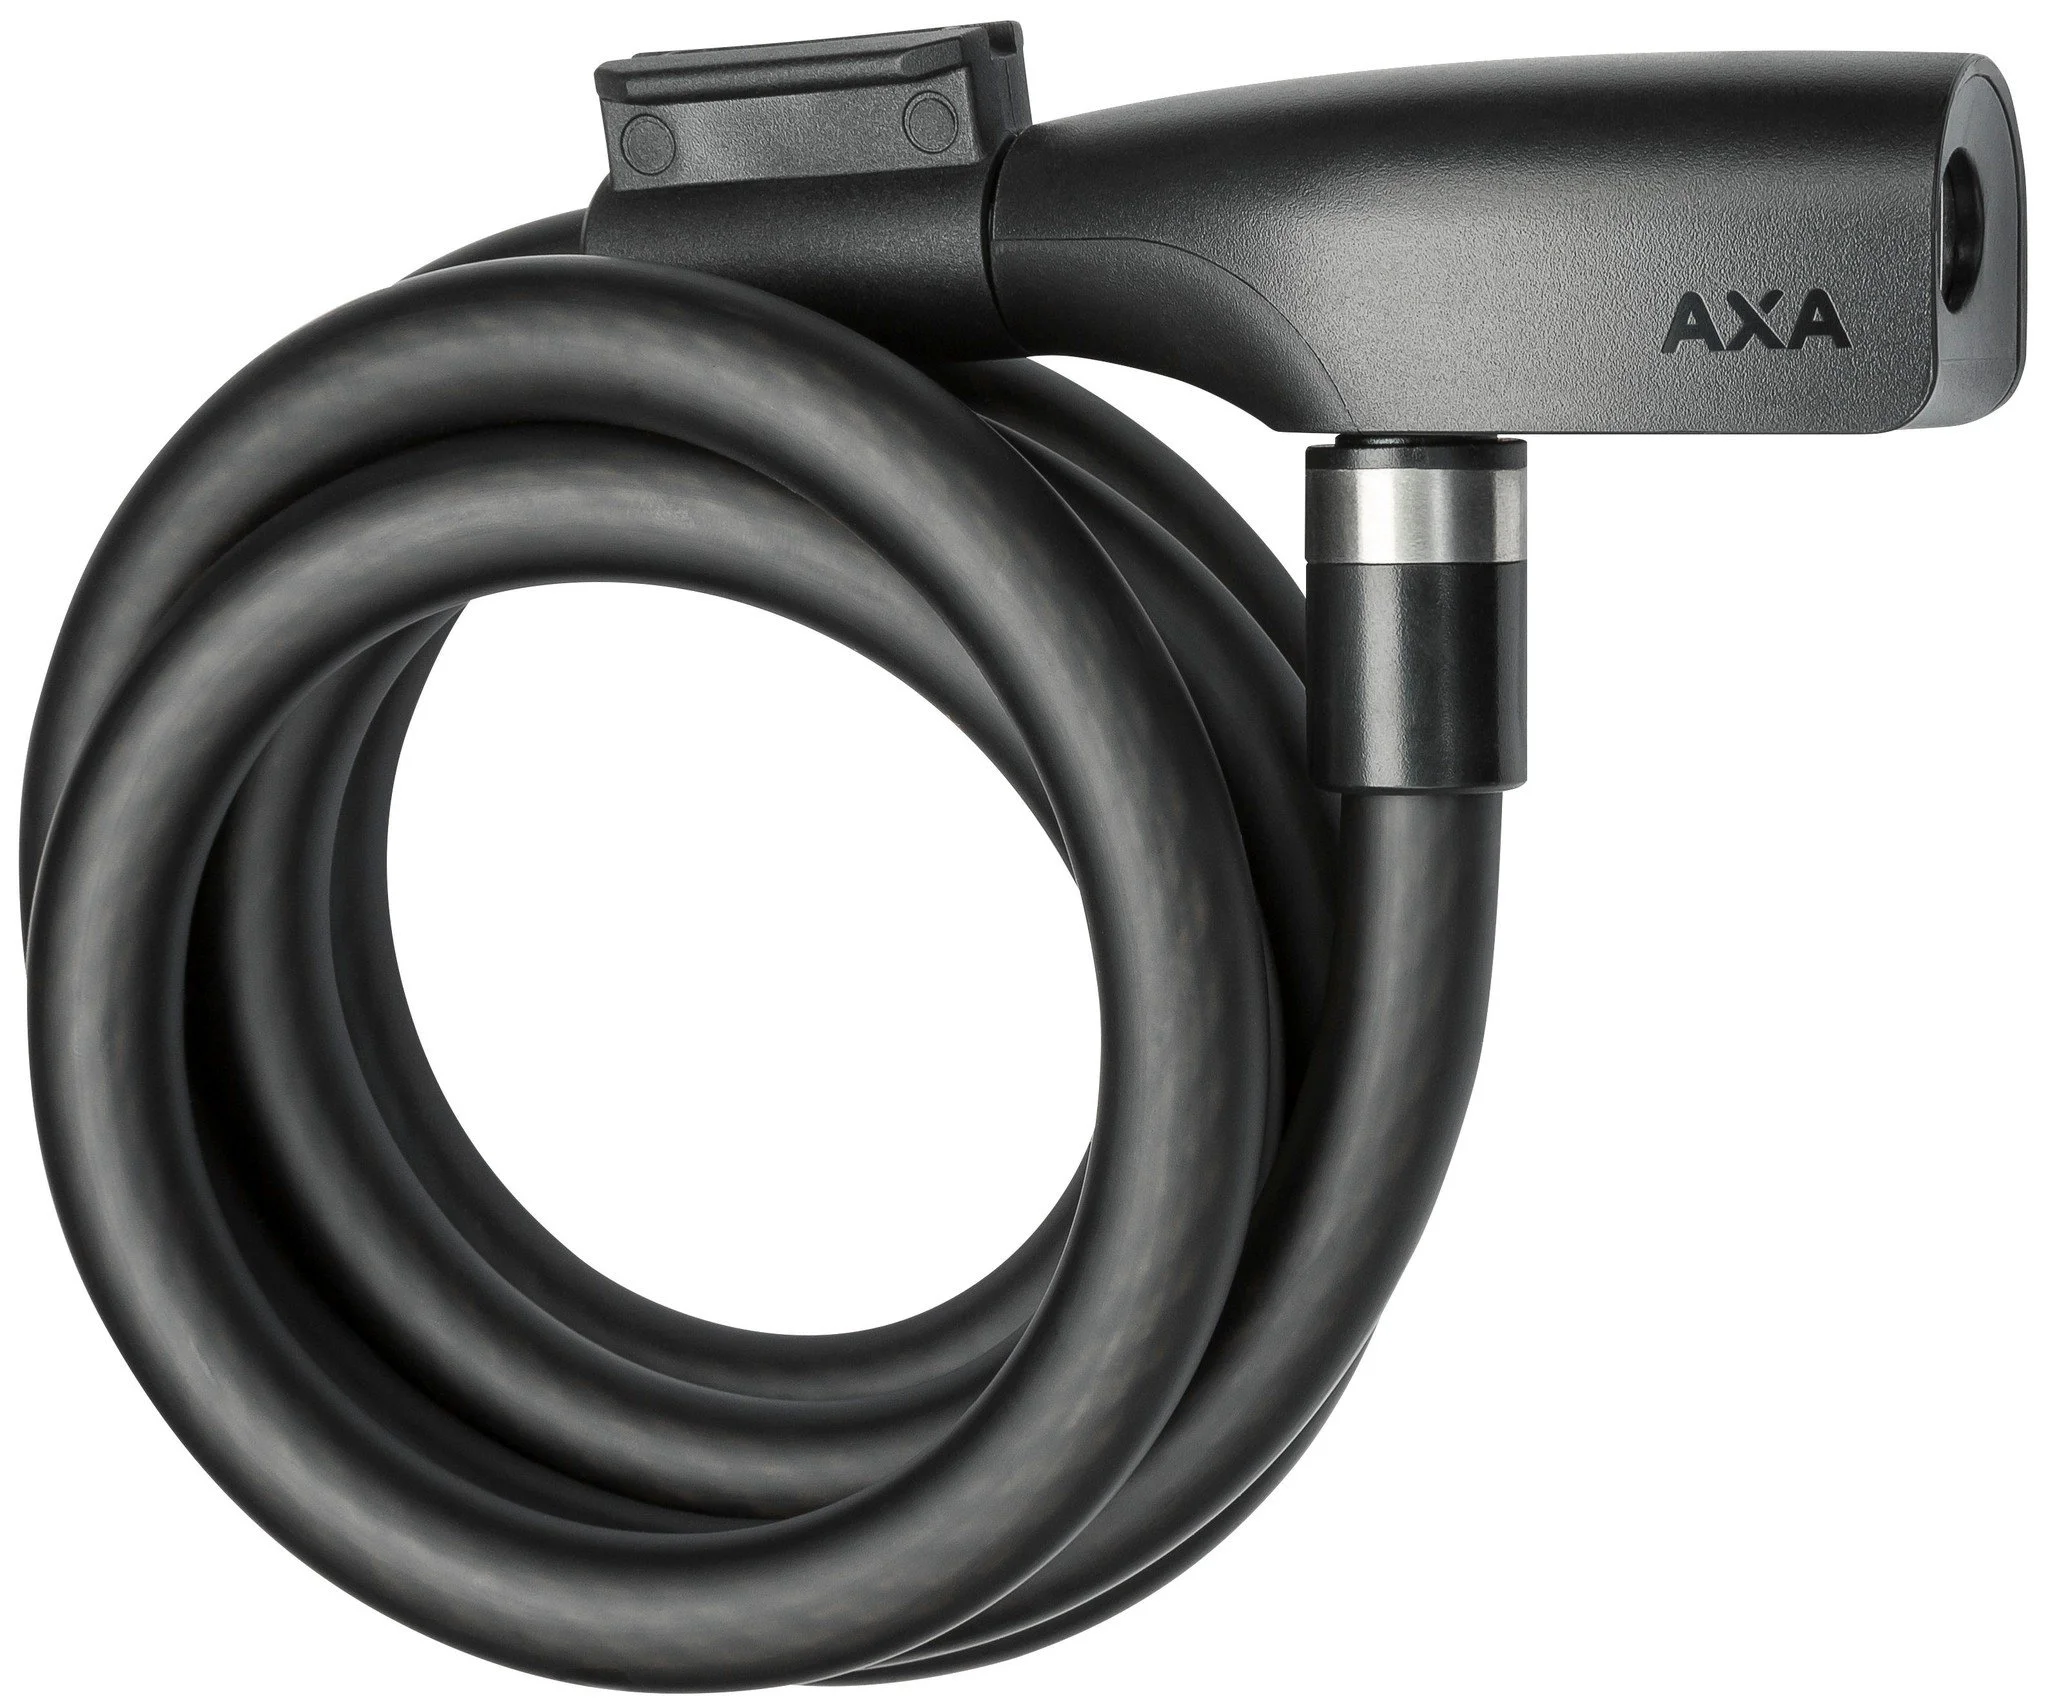 AXA kabelslot Resolute 12 180 Ø12-1800 mm zwart